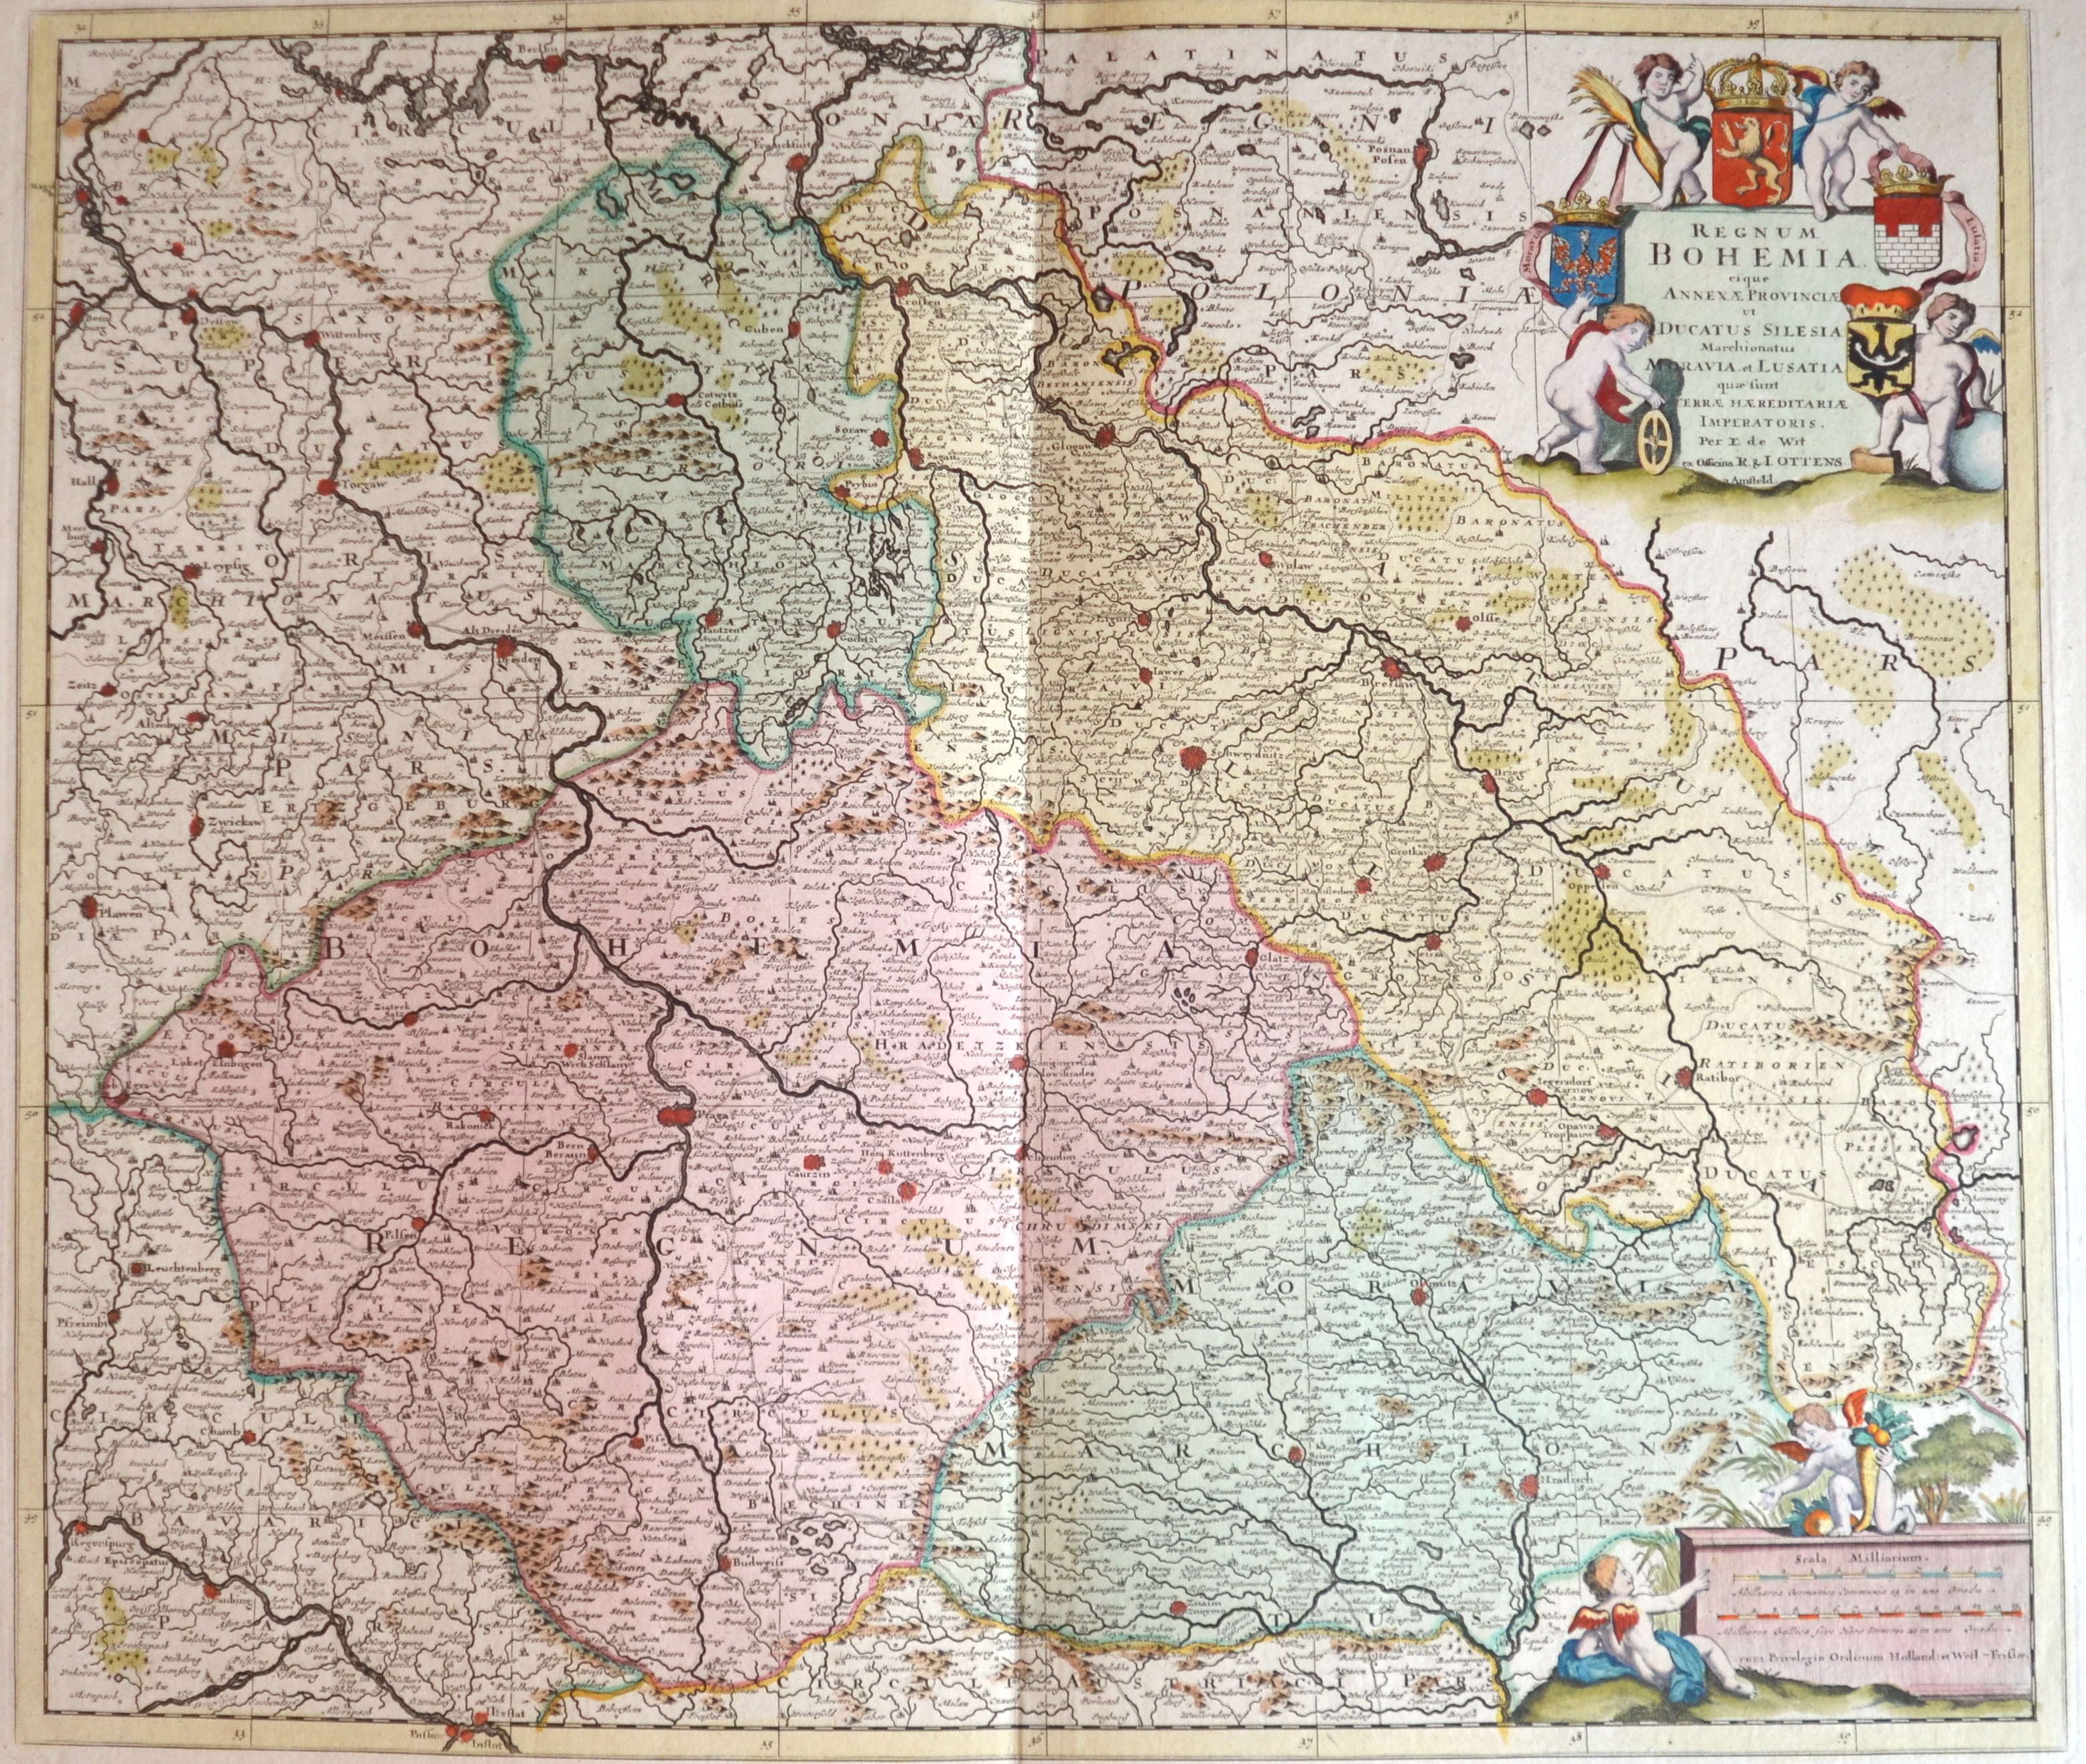 Ottens Josua und Renier Regnum Bohemia. Eique Annexae Provinciae ut Ducatus Silesia Marchionatus Moravia et Lusatia